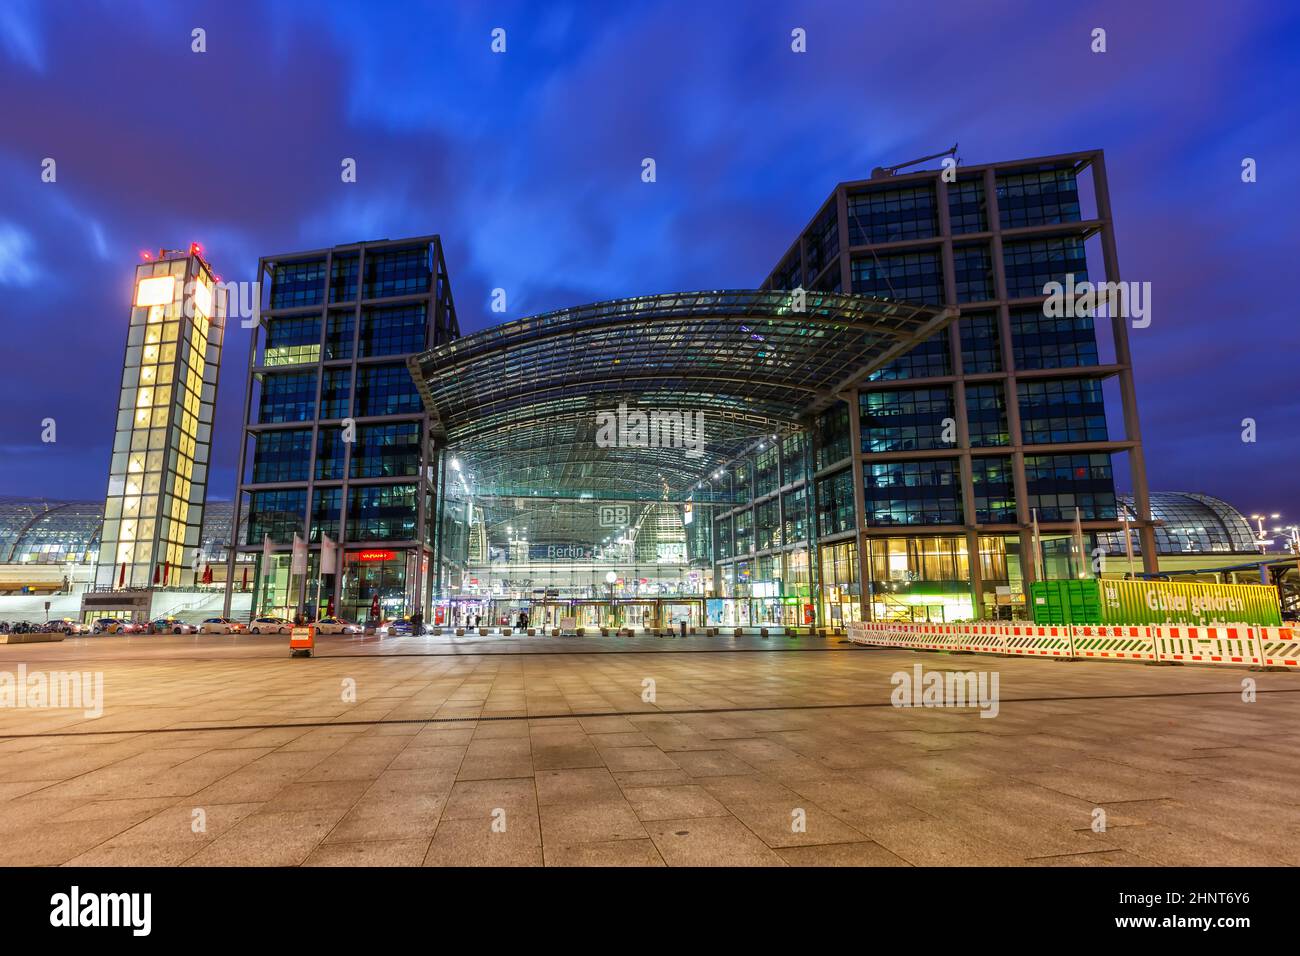 Gare principale de Berlin Hauptbahnhof Hbf train architecture moderne au crépuscule en Allemagne Banque D'Images